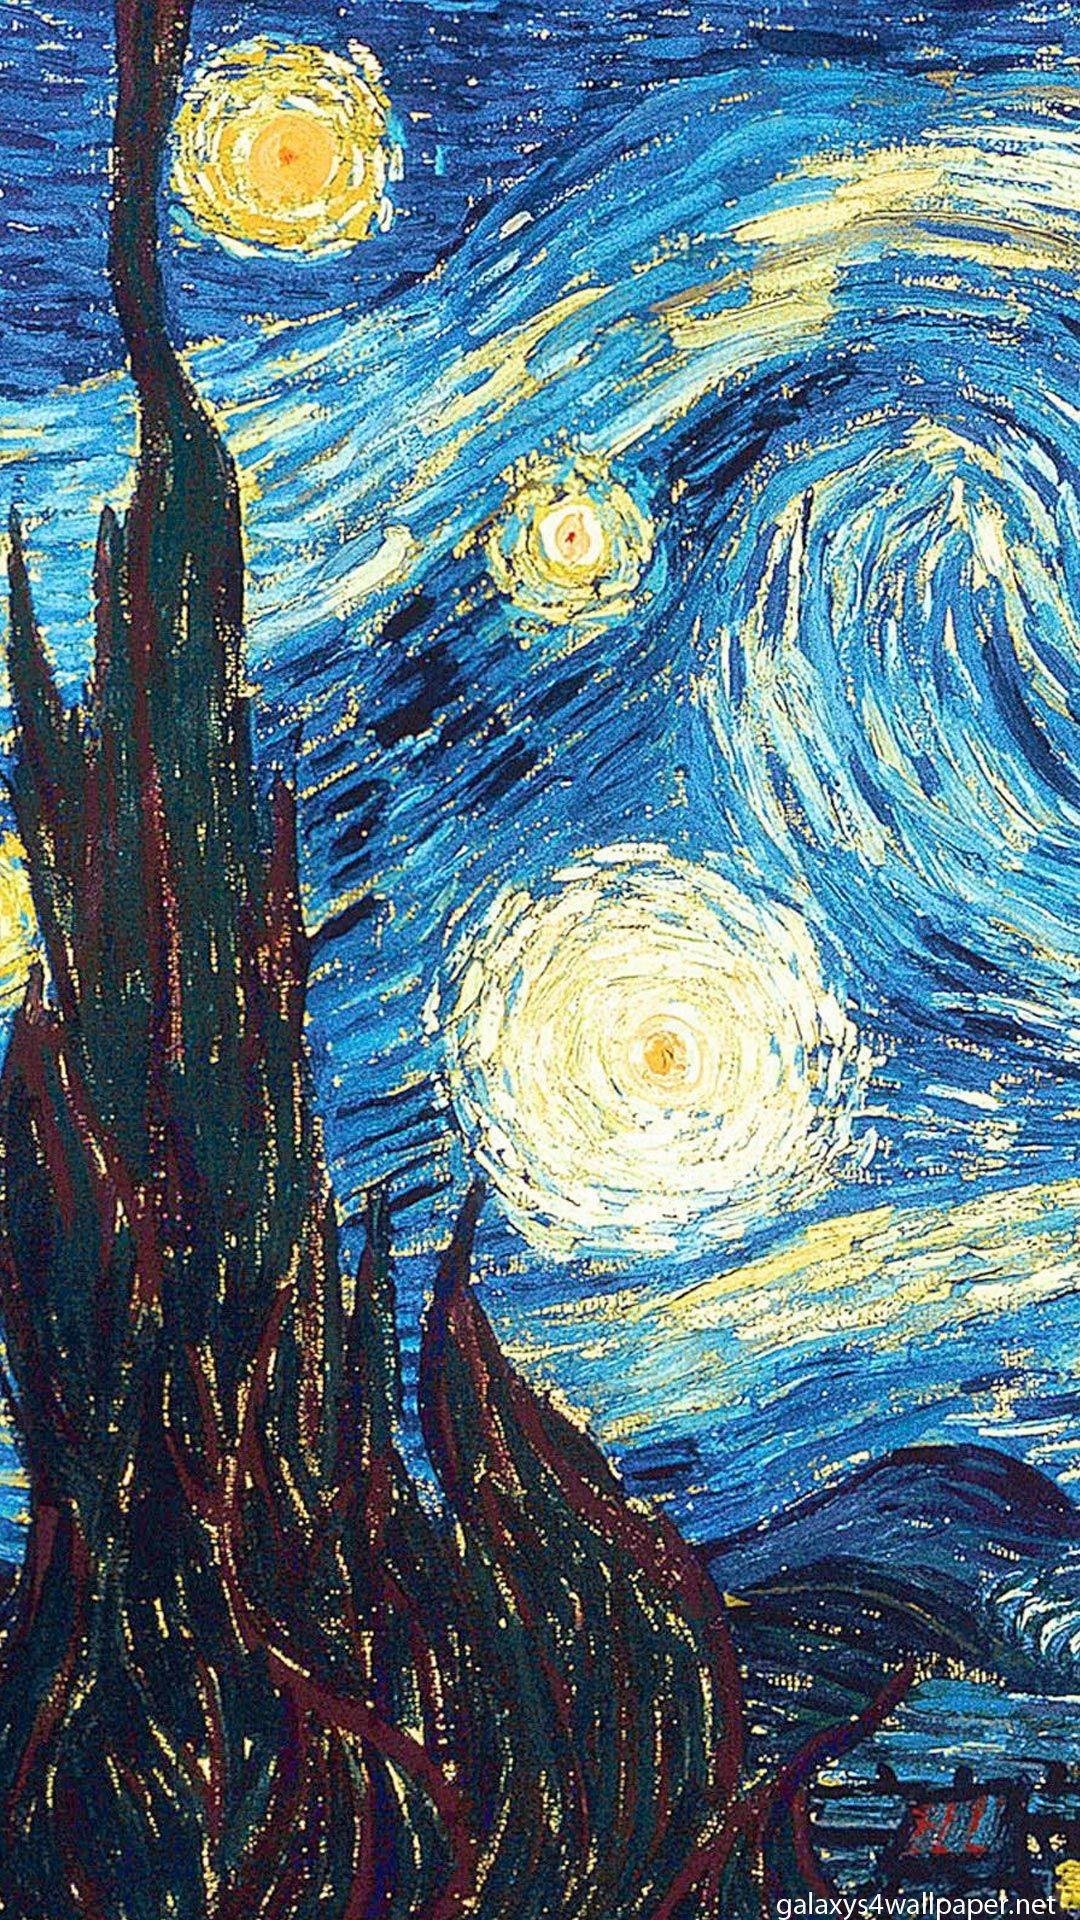 Van Gogh art wallpaper, desktop background